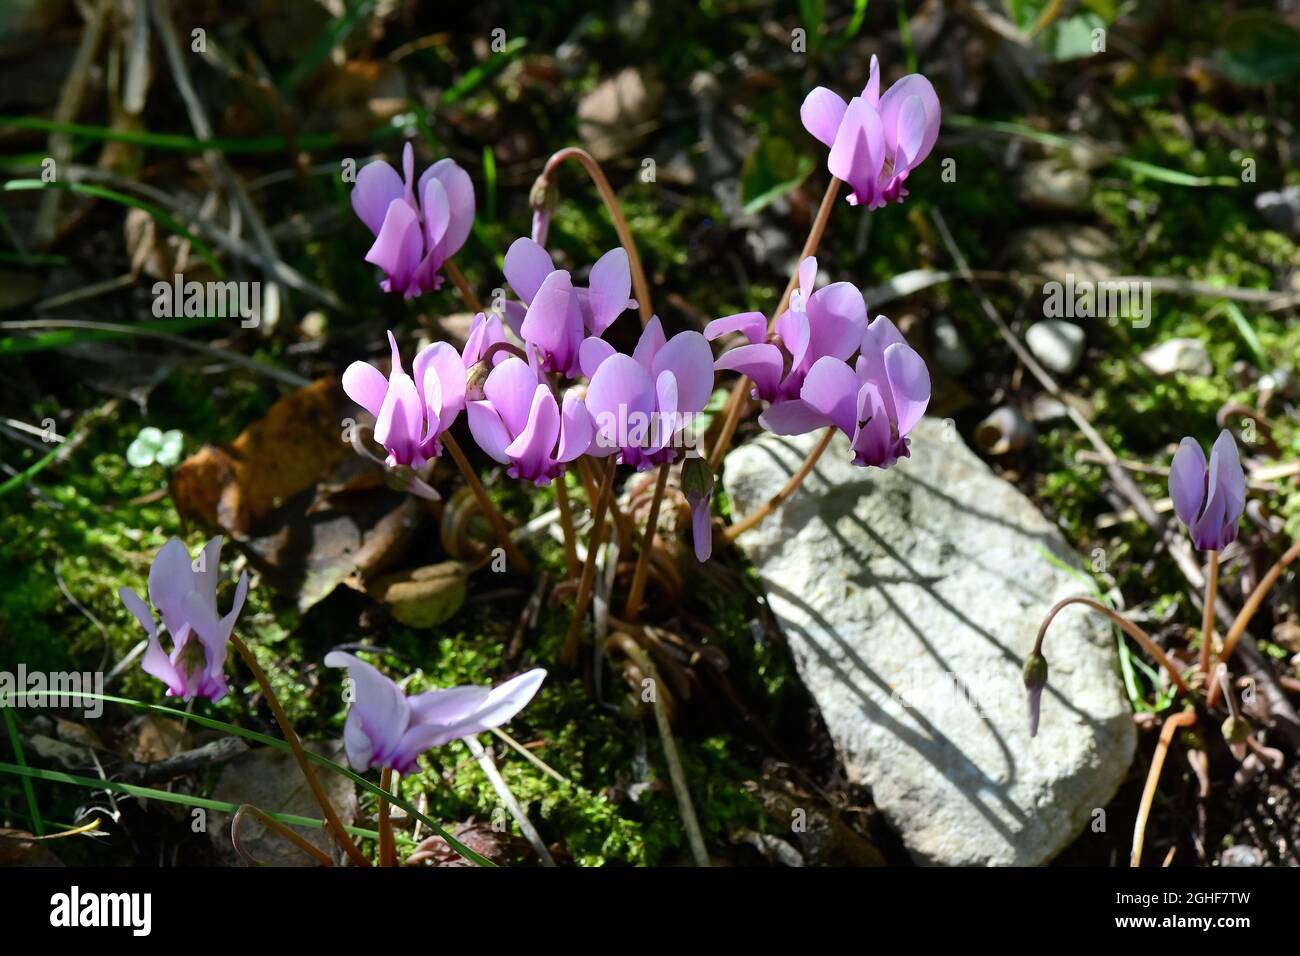 Alpine, European or purple cyclamen, Europäisches Alpenveilchen, Wildes Alpenveilchen, Cyclamen pourpre, Cyclamen purpurascens, erdei ciklámen Stock Photo